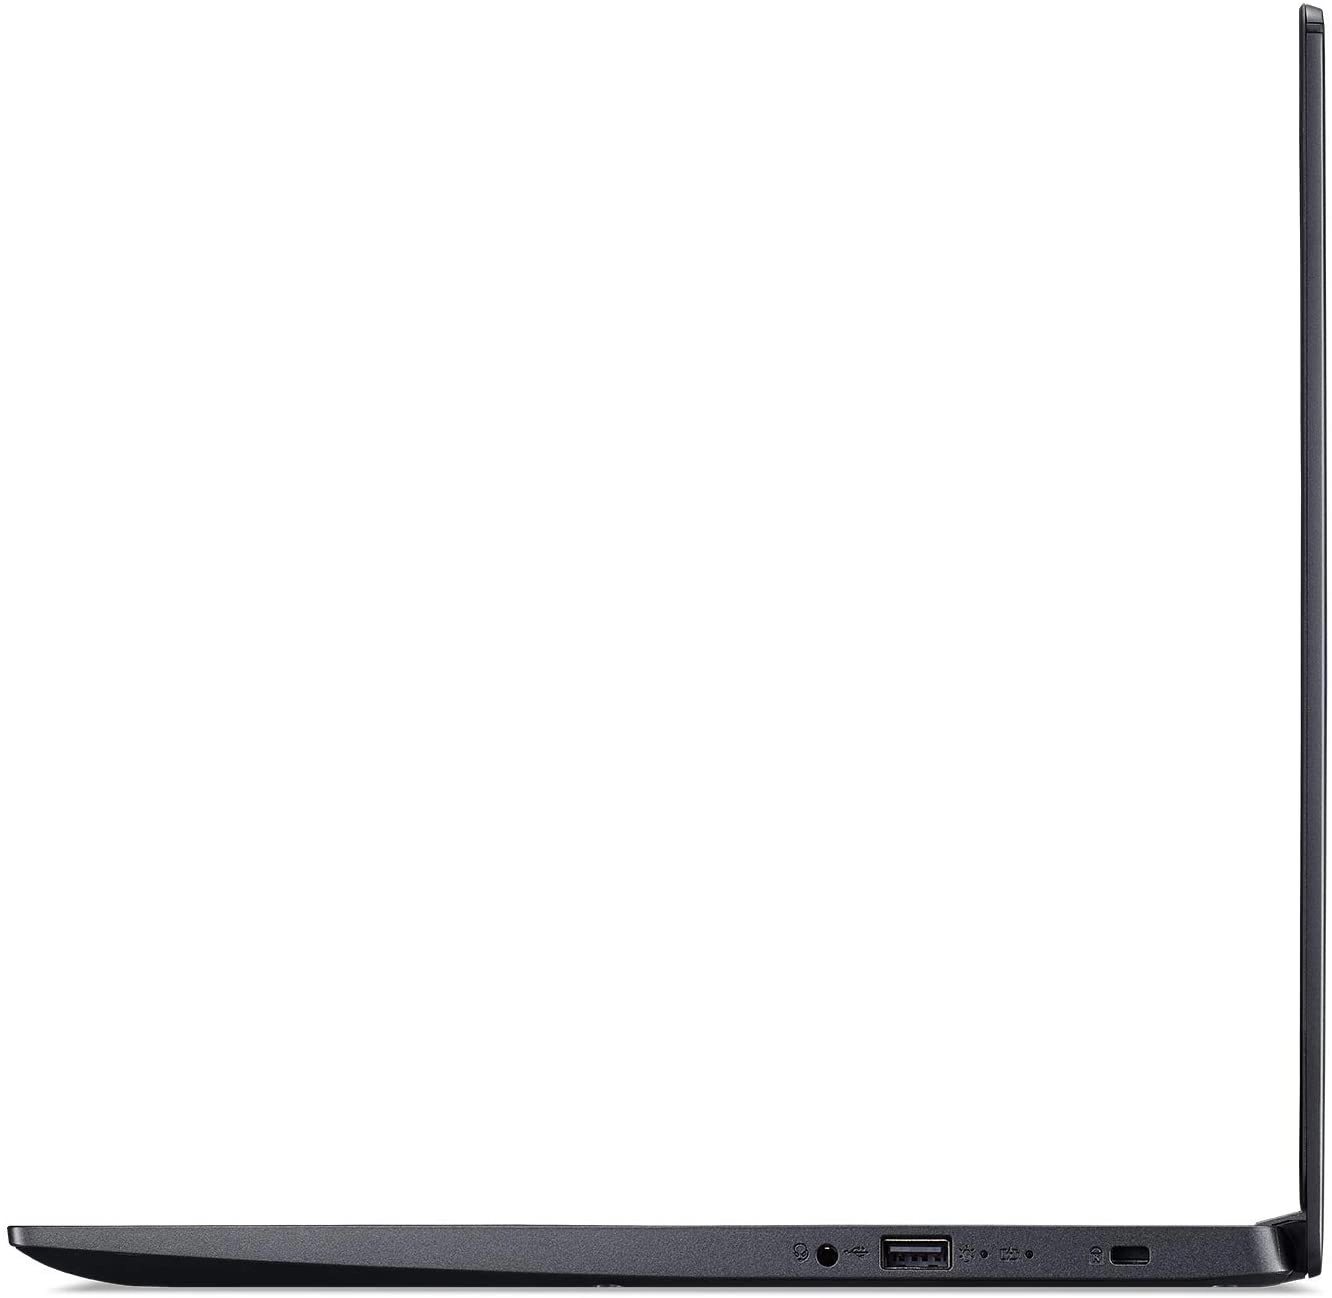 Acer A515-55T-53AP laptop image